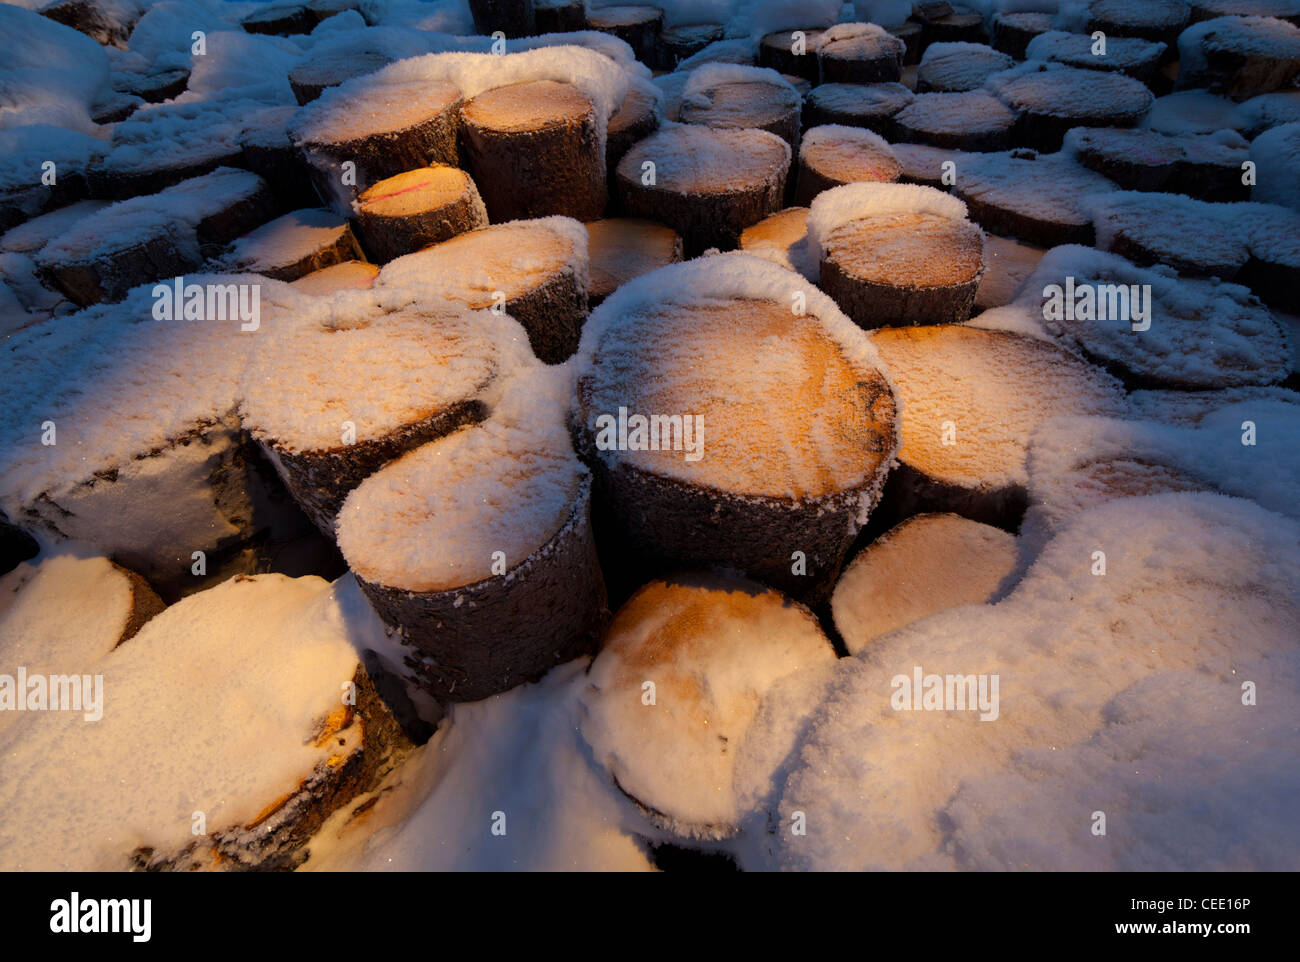 Primer plano de la pila de troncos de picea cubierta de nieve ( picea abies ), Finlandia Foto de stock